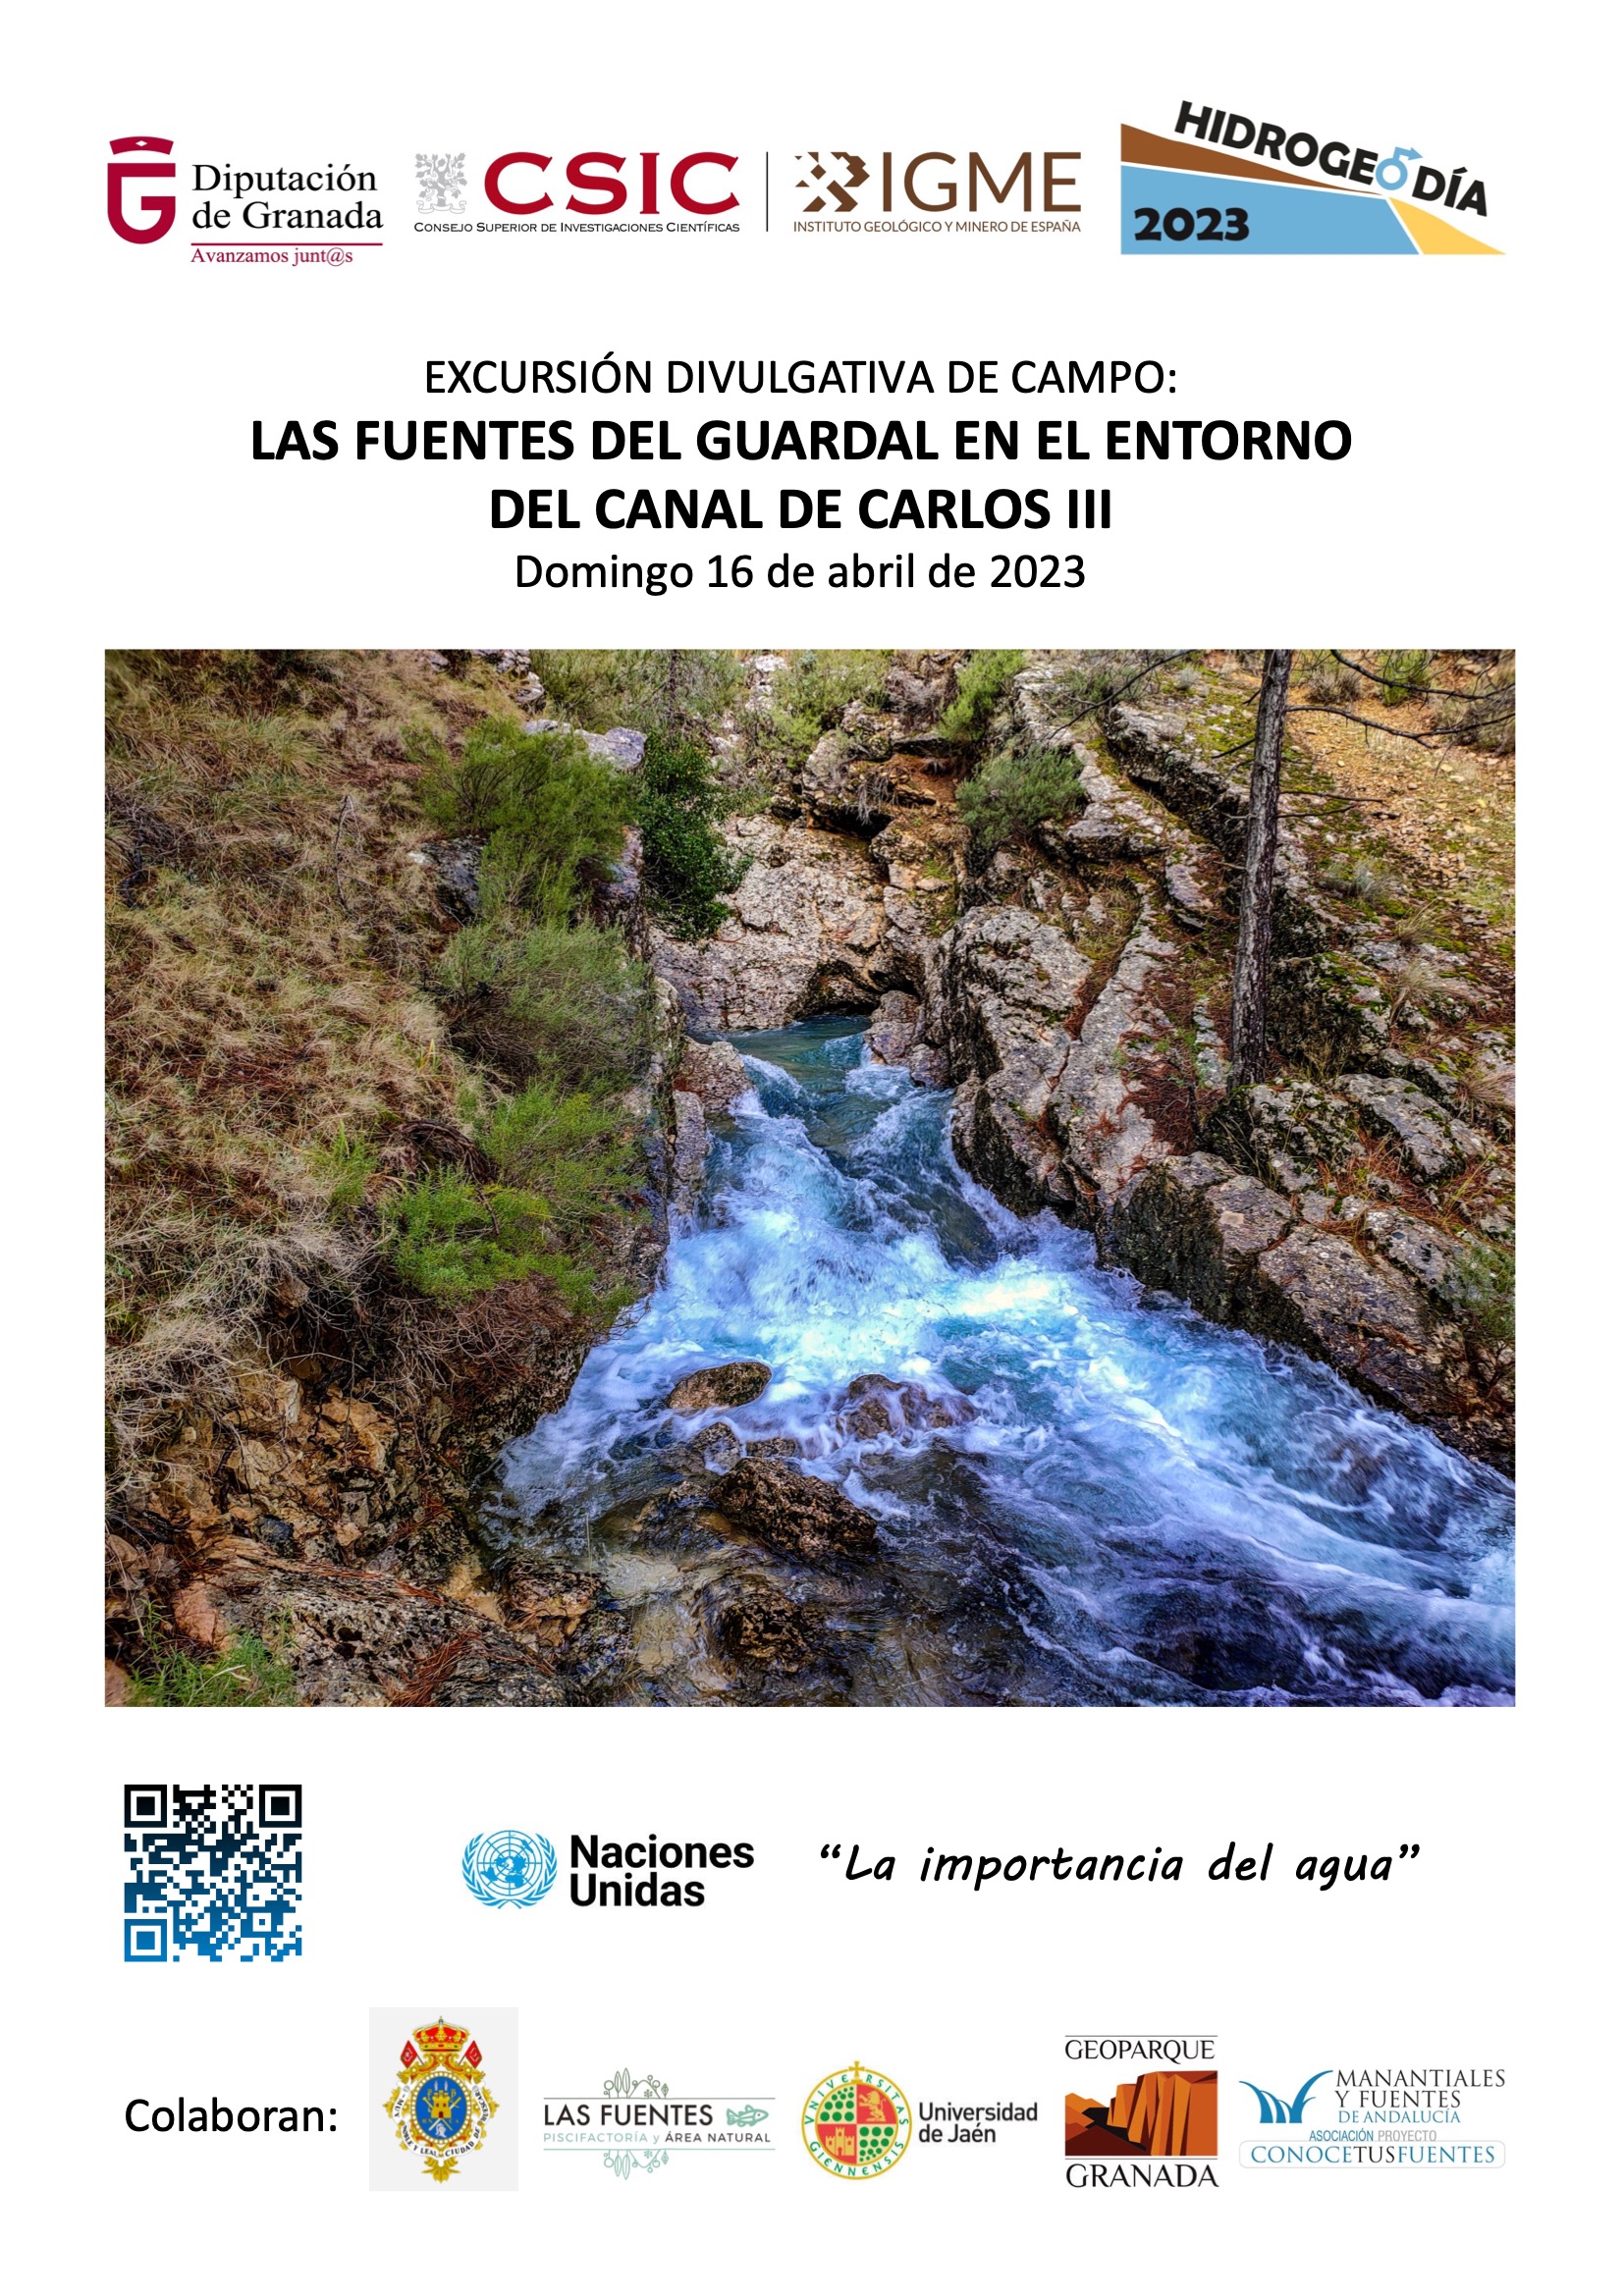 hidrogeodia 2023 definitivo 1 - Hidrogeodía 2023 en el Geoparque de Granada - Geoparque de Granada